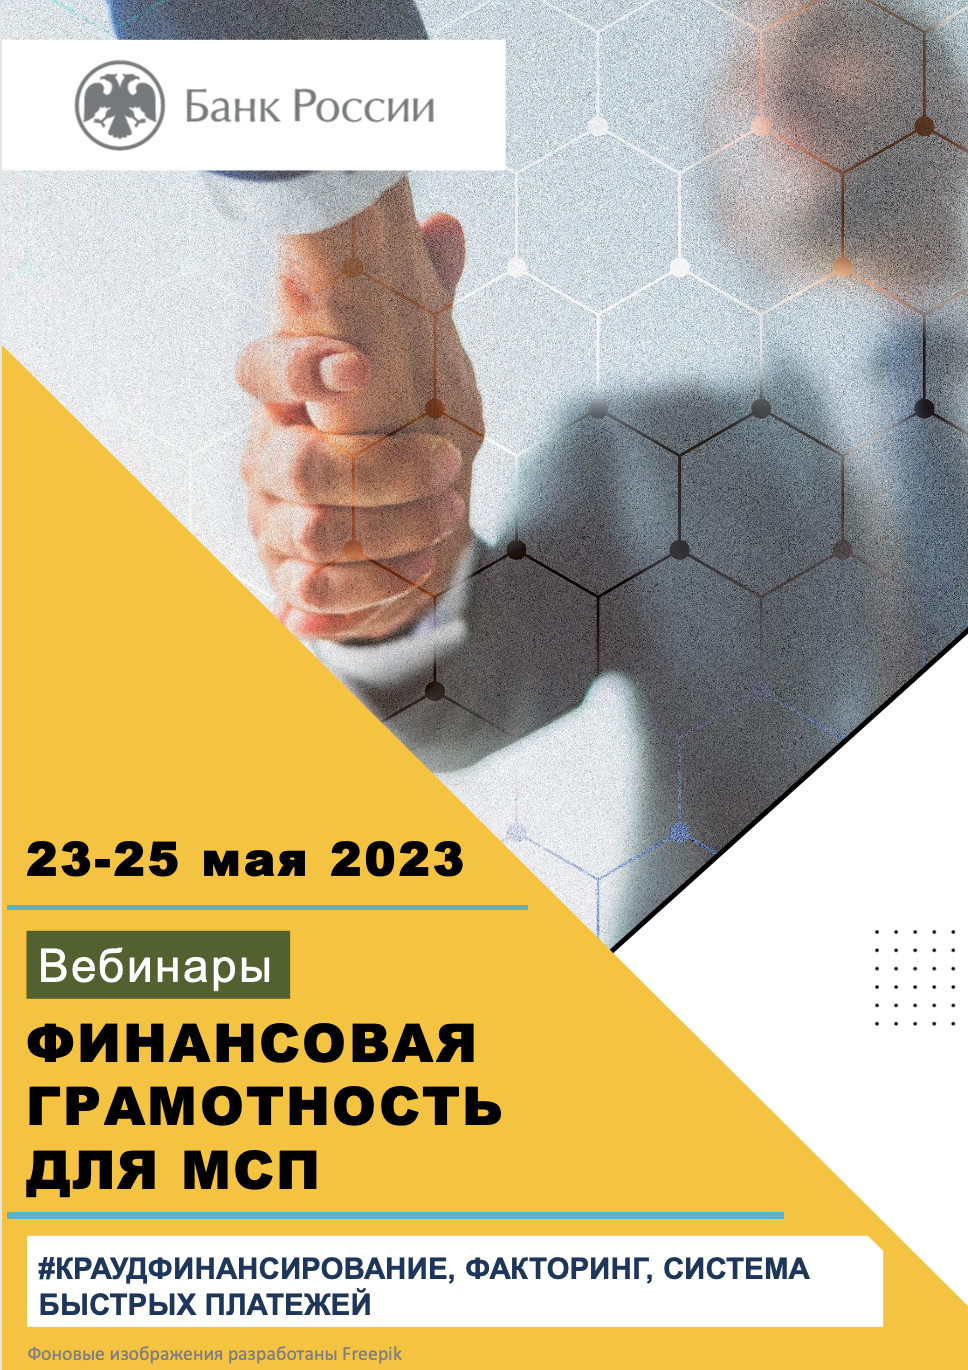 Представители АОИП выступят на вебинаре «Финансовая грамотность для МСП» в Ростове-на-Дону